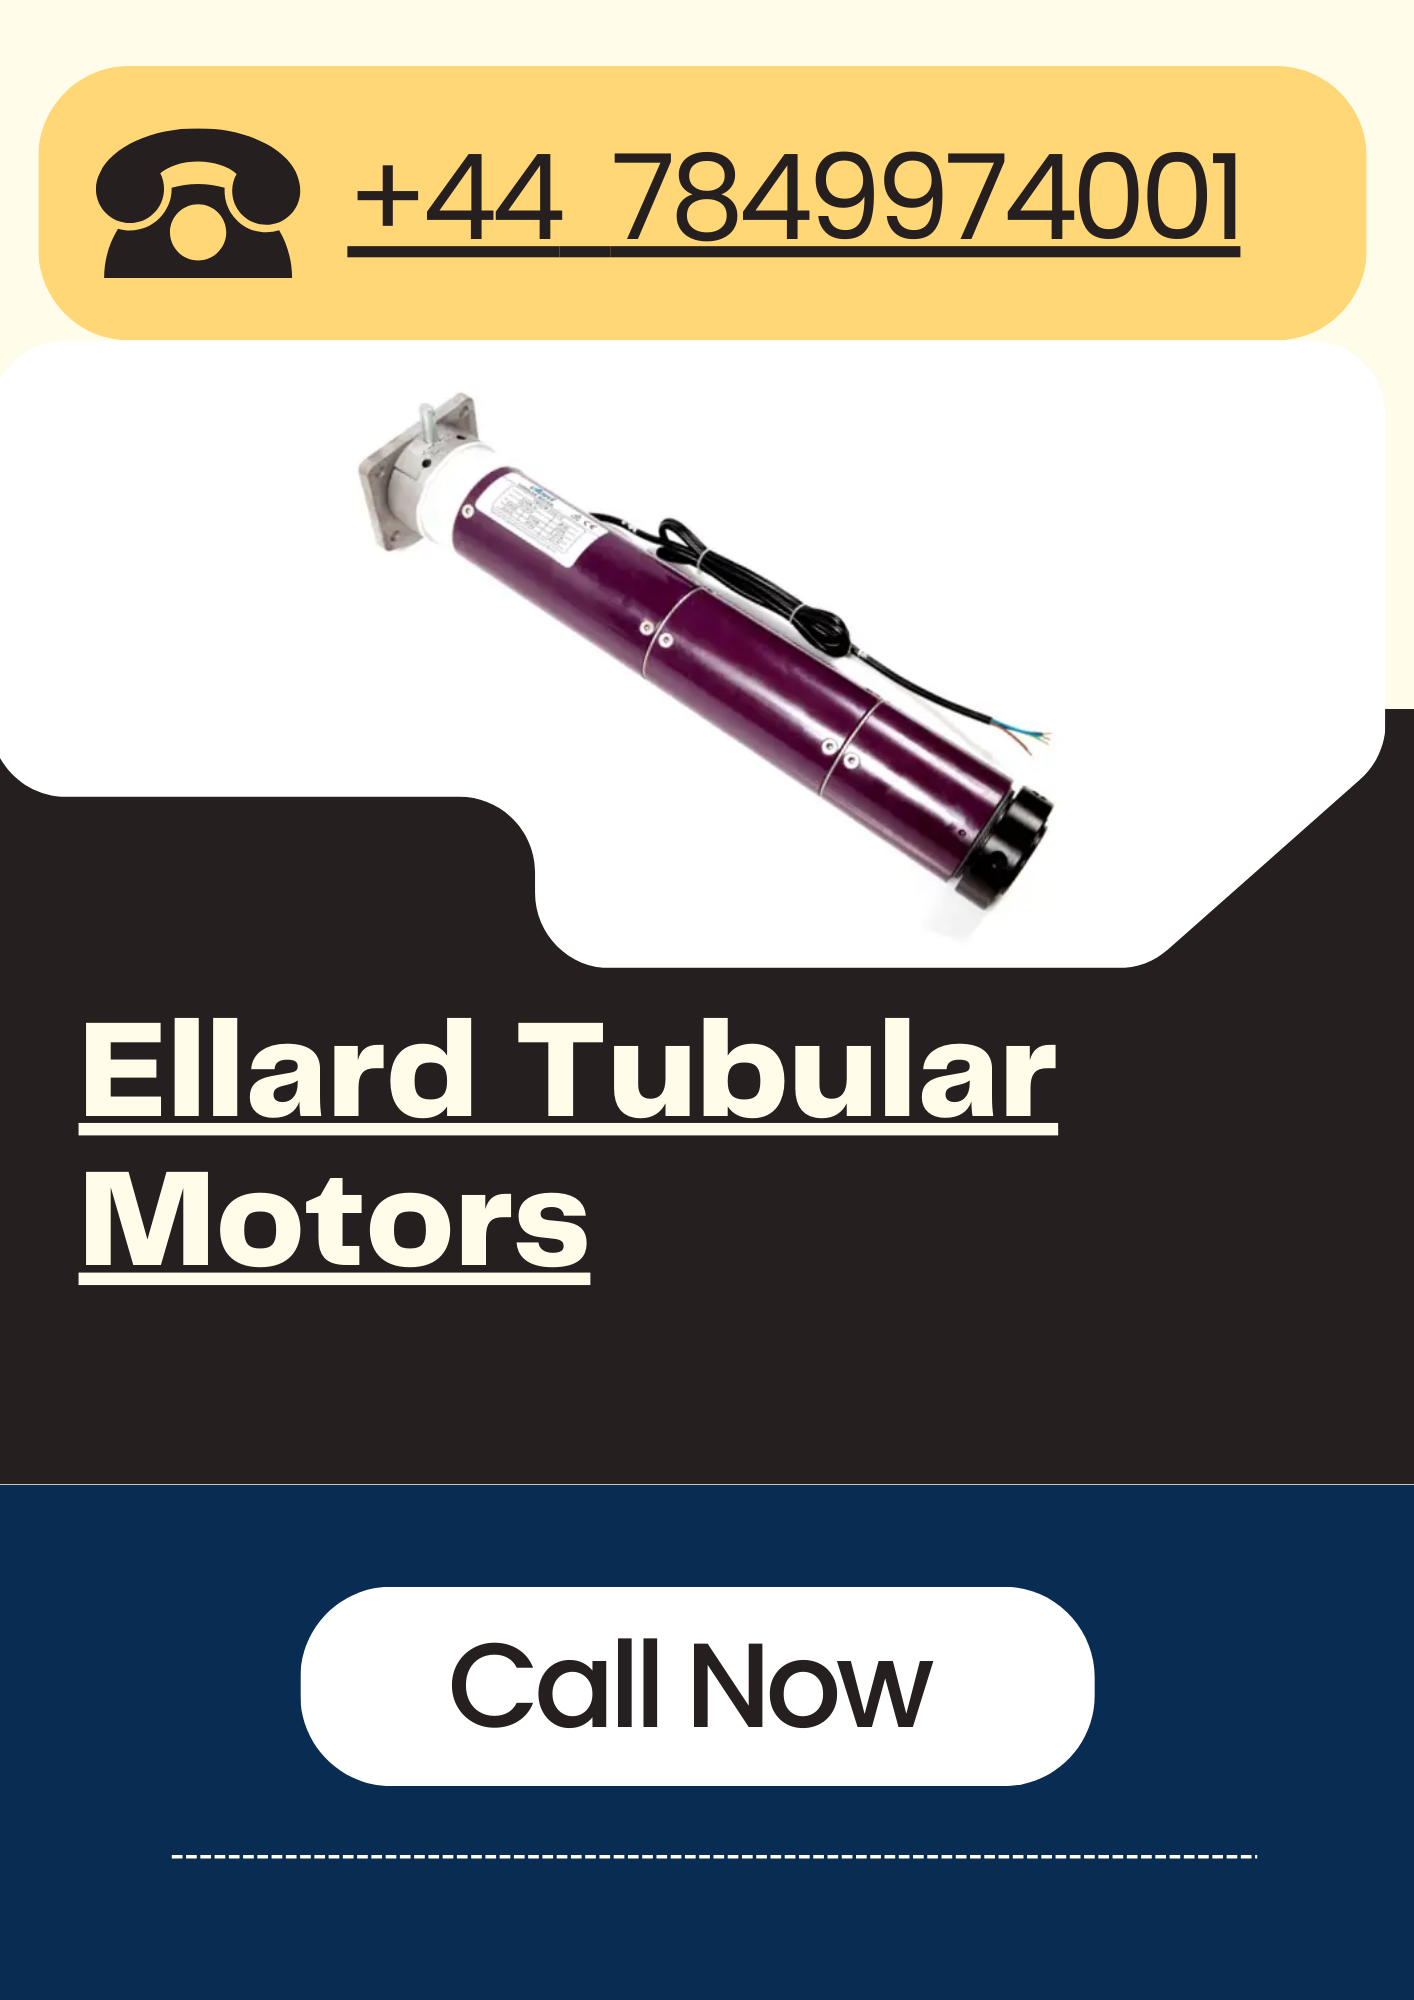 Ellard Tubular Motors